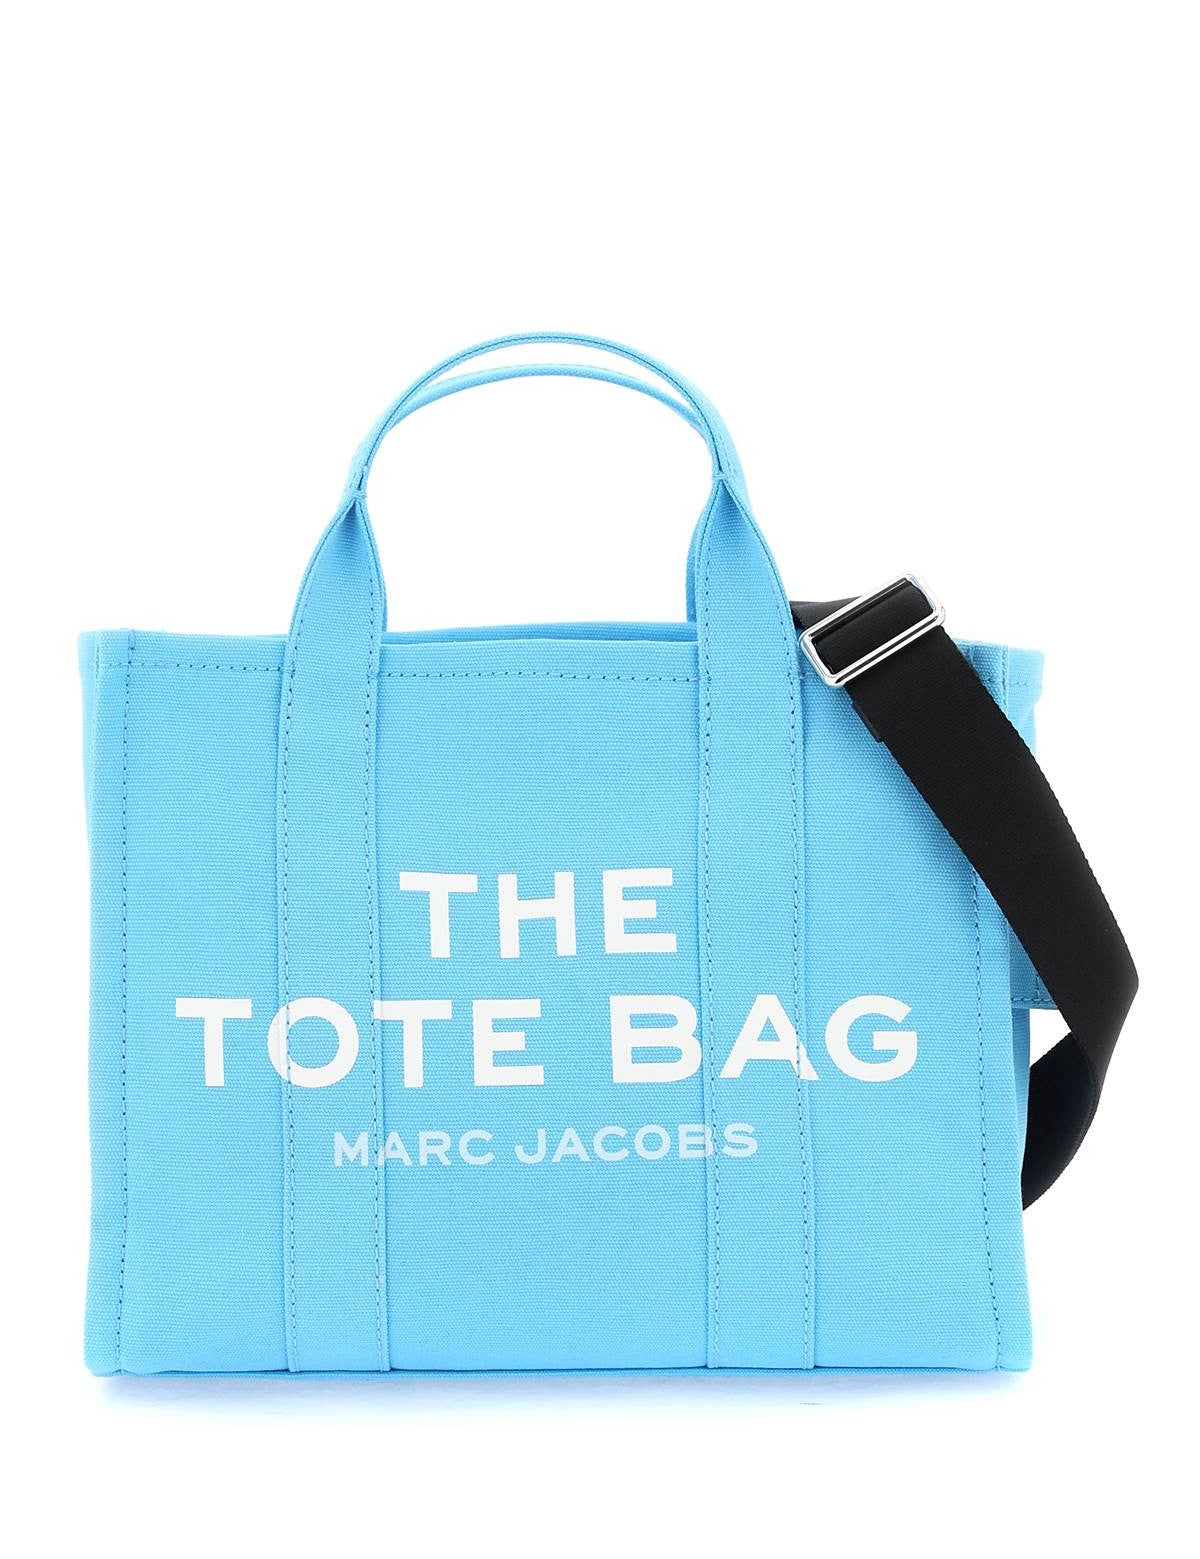 marc-jacobs-the-tote-bag-medium_58e7881b-6715-4adb-9de0-903f765d9c30.jpg